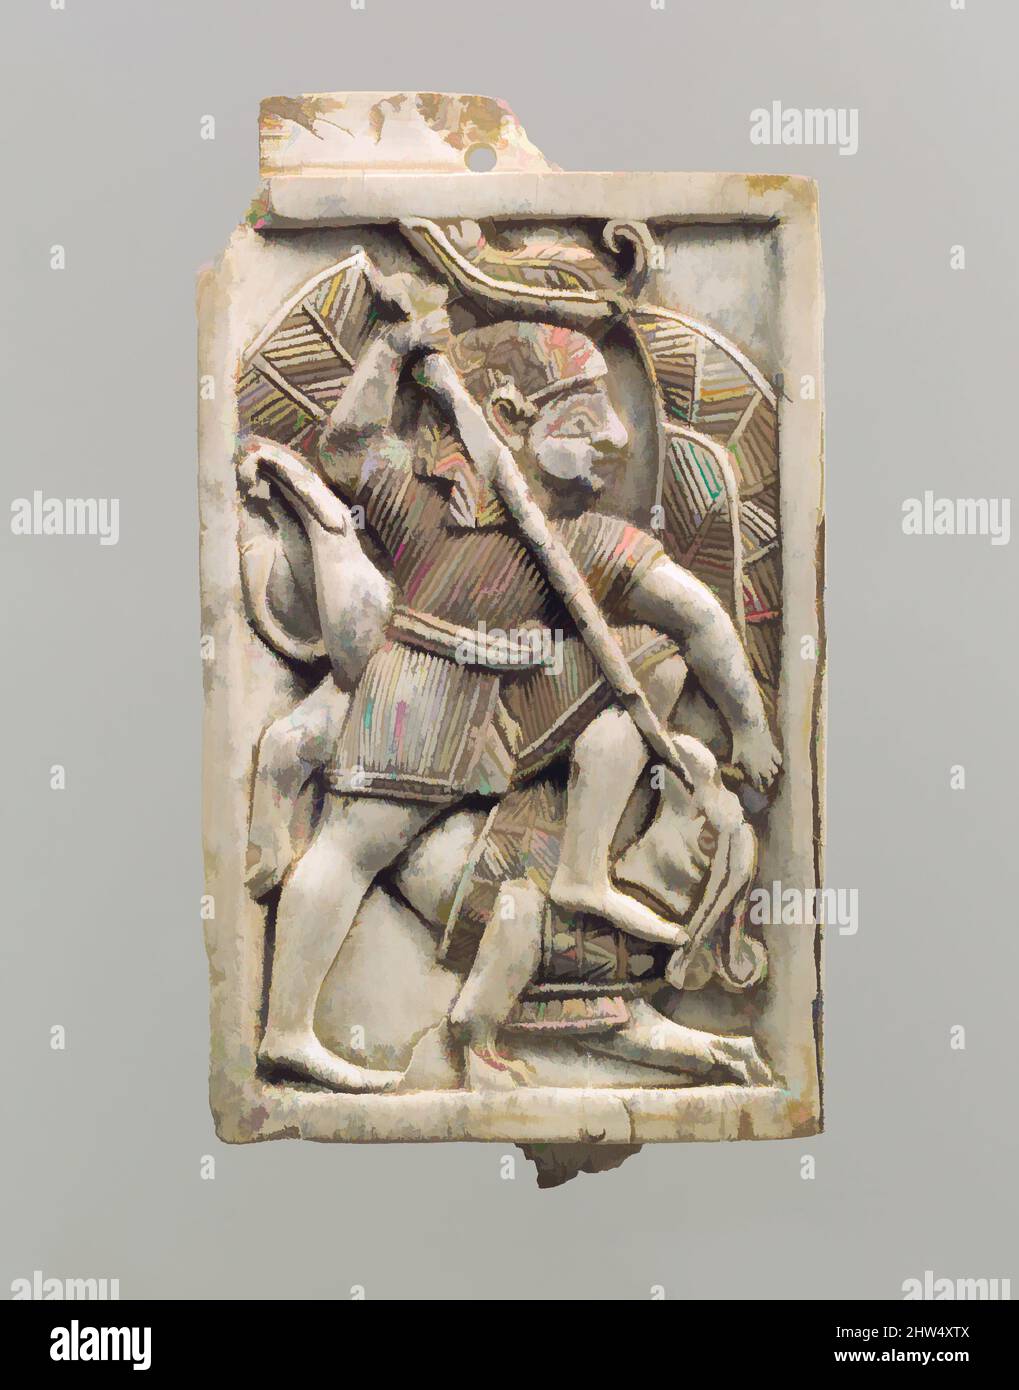 Kunst inspiriert von Möbelplakette in Relief geschnitzt mit einer männlichen Figur, die einen Greifen erschmettern, neo-assyrisch, ca. 9.–8.. Jahrhundert v. Chr., Mesopotamien, Nimrud (altes Kalhu), Assyrisch, Elfenbein, H. 4 1/8 x B 4 11/16 x T 7/16 Zoll (10,5 x 11,9 x 1,1 cm), Elfenbein/Knochenreliefs, Diese Tafel ist eingehauen, Klassisches Werk, modernisiert von Artotop mit einem Schuss Moderne. Formen, Farbe und Wert, auffällige visuelle Wirkung auf Kunst. Emotionen durch Freiheit von Kunstwerken auf zeitgemäße Weise. Eine zeitlose Botschaft, die eine wild kreative neue Richtung verfolgt. Künstler, die sich dem digitalen Medium zuwenden und die Artotop NFT erschaffen Stockfoto